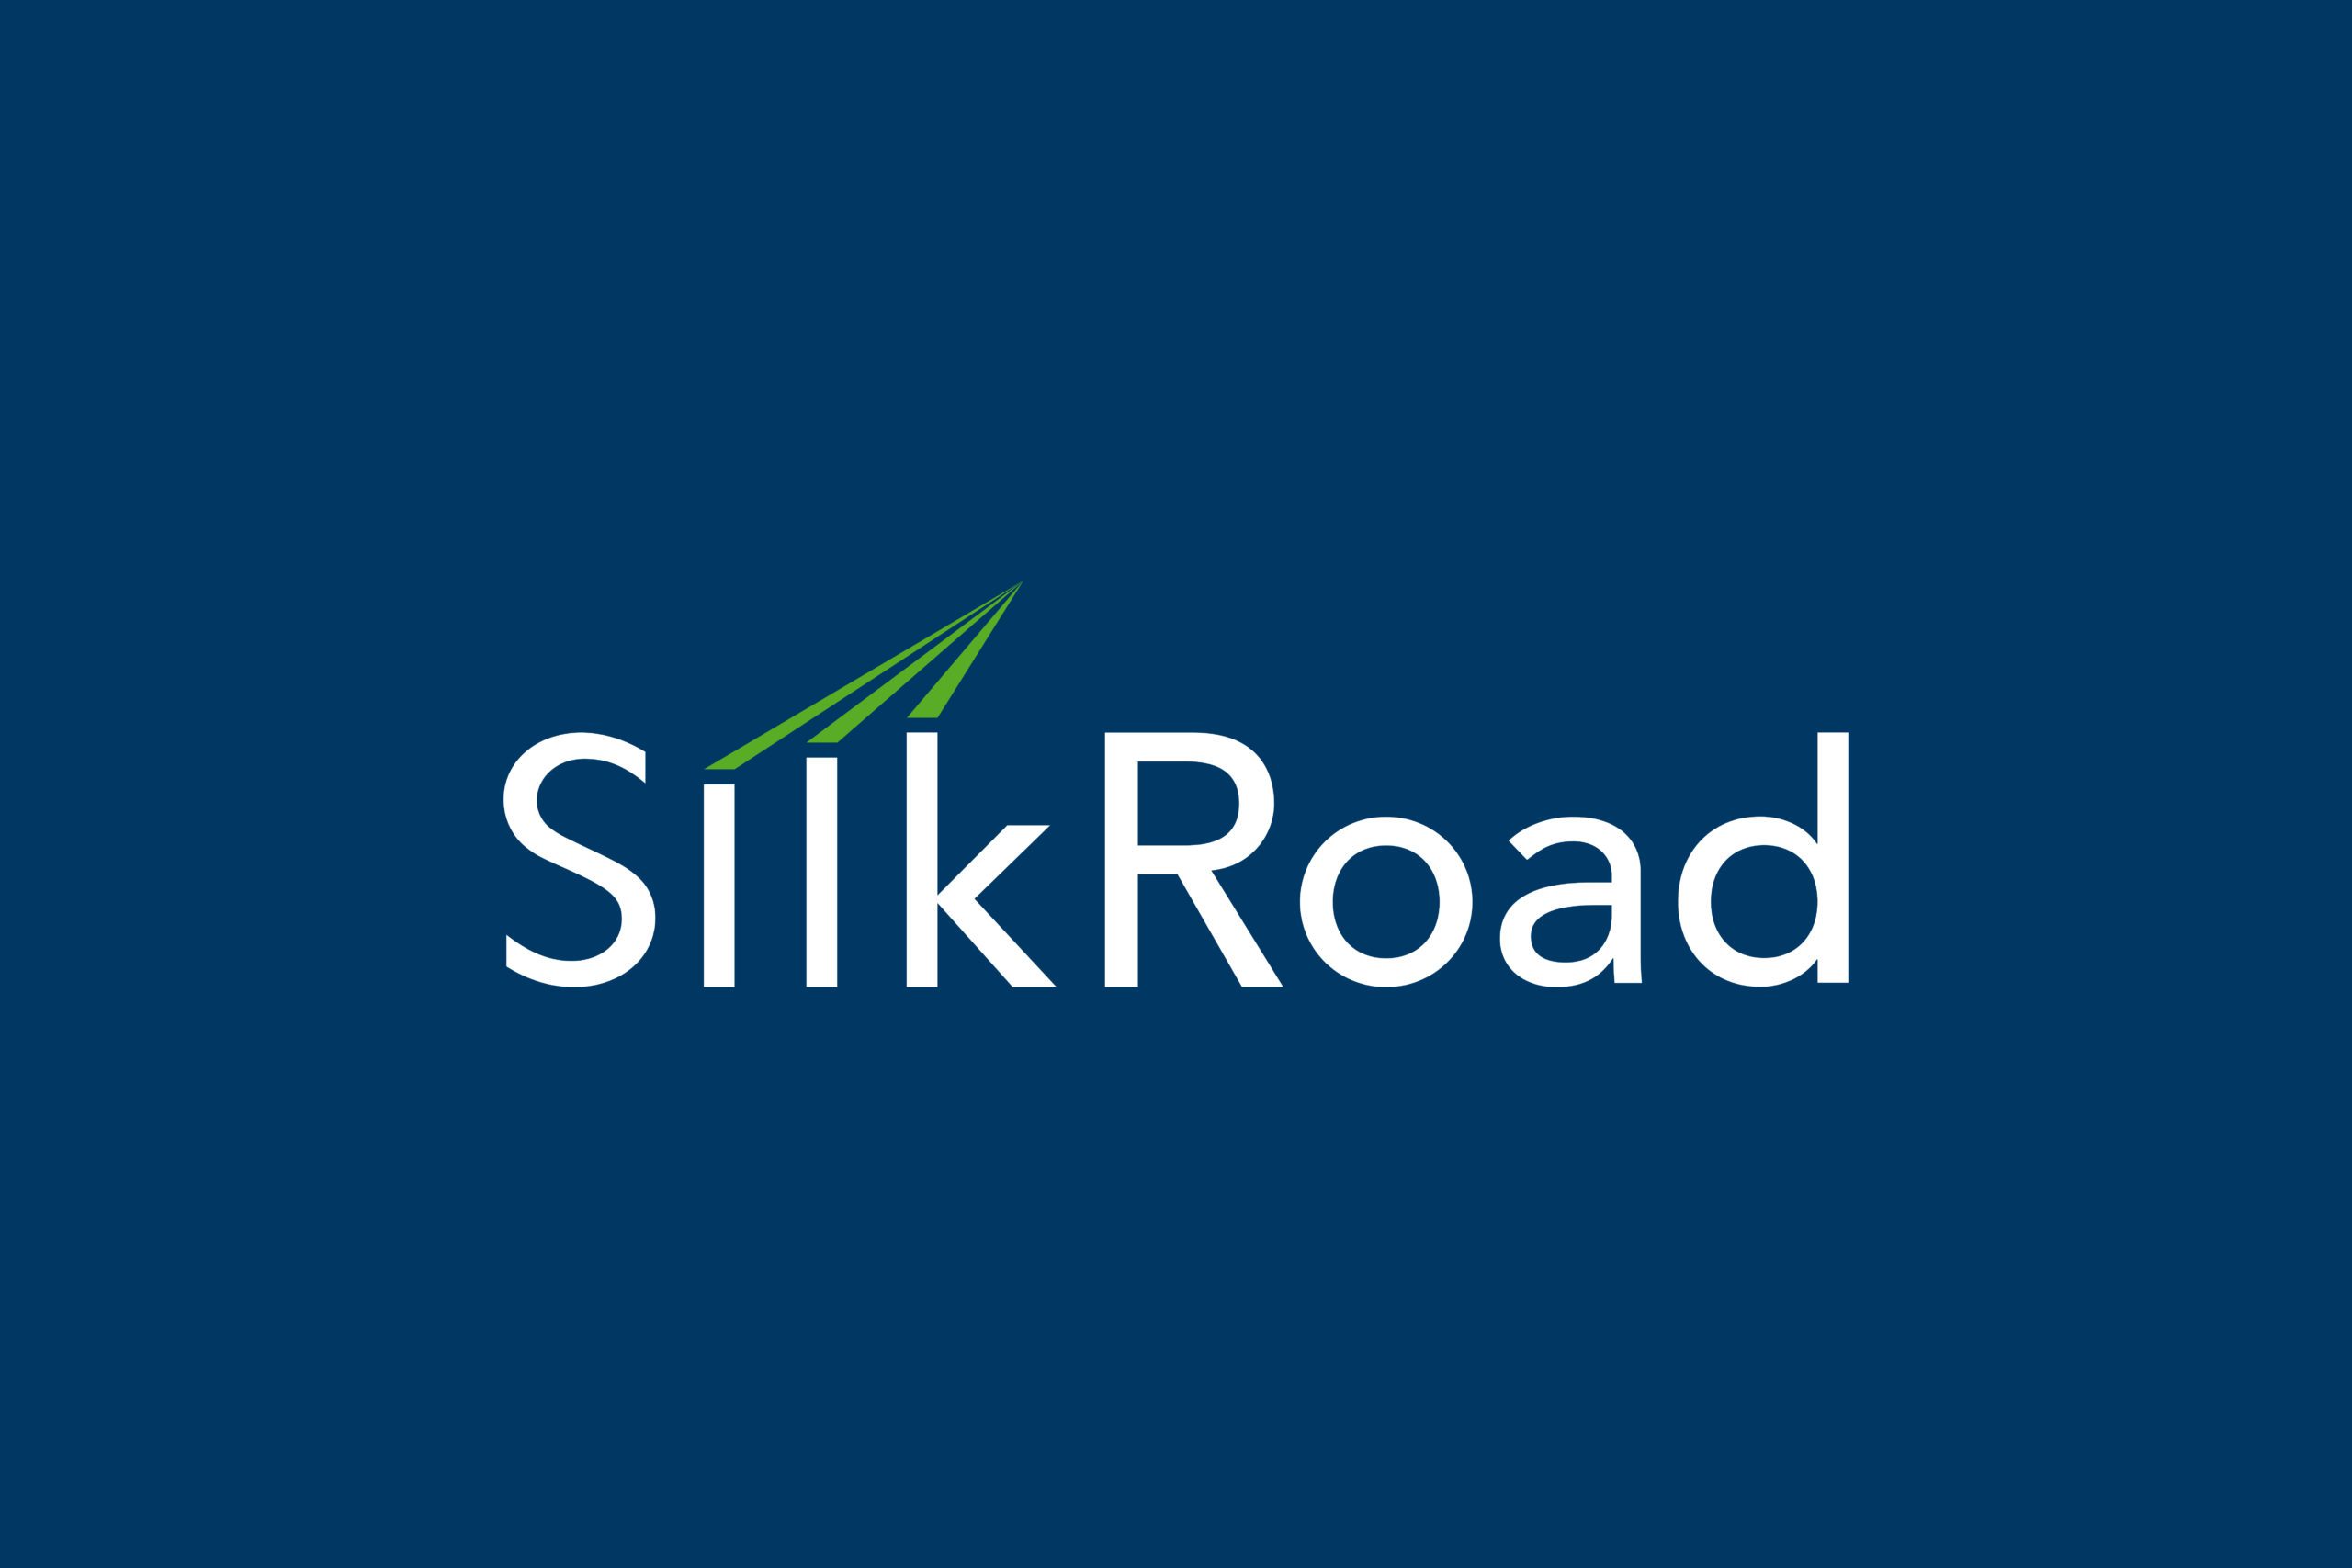 Silkroad Logo On Dark Blue Background Full Colour